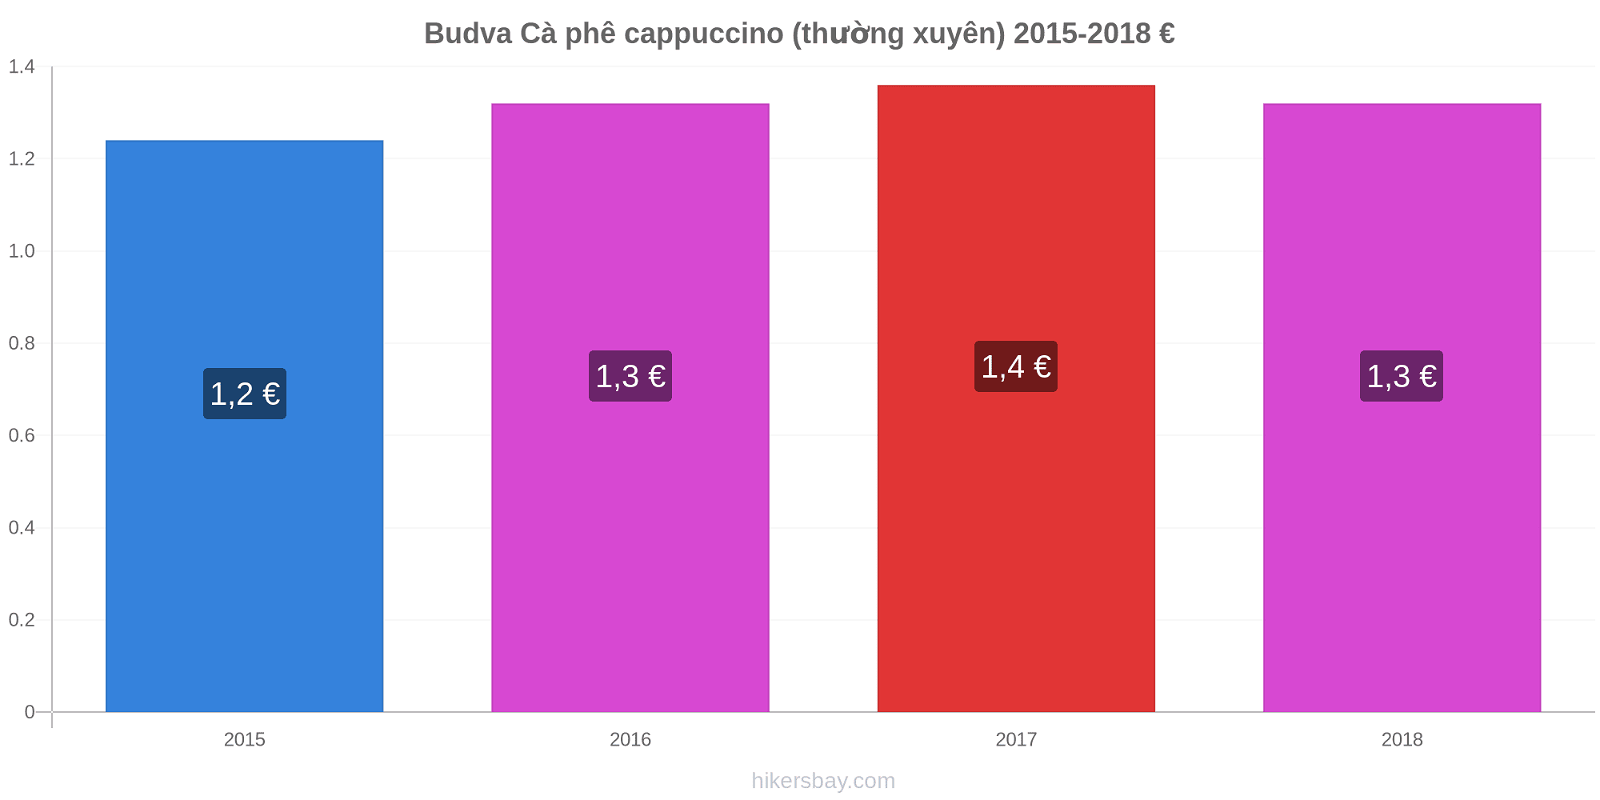 Budva thay đổi giá Cà phê cappuccino (thường xuyên) hikersbay.com